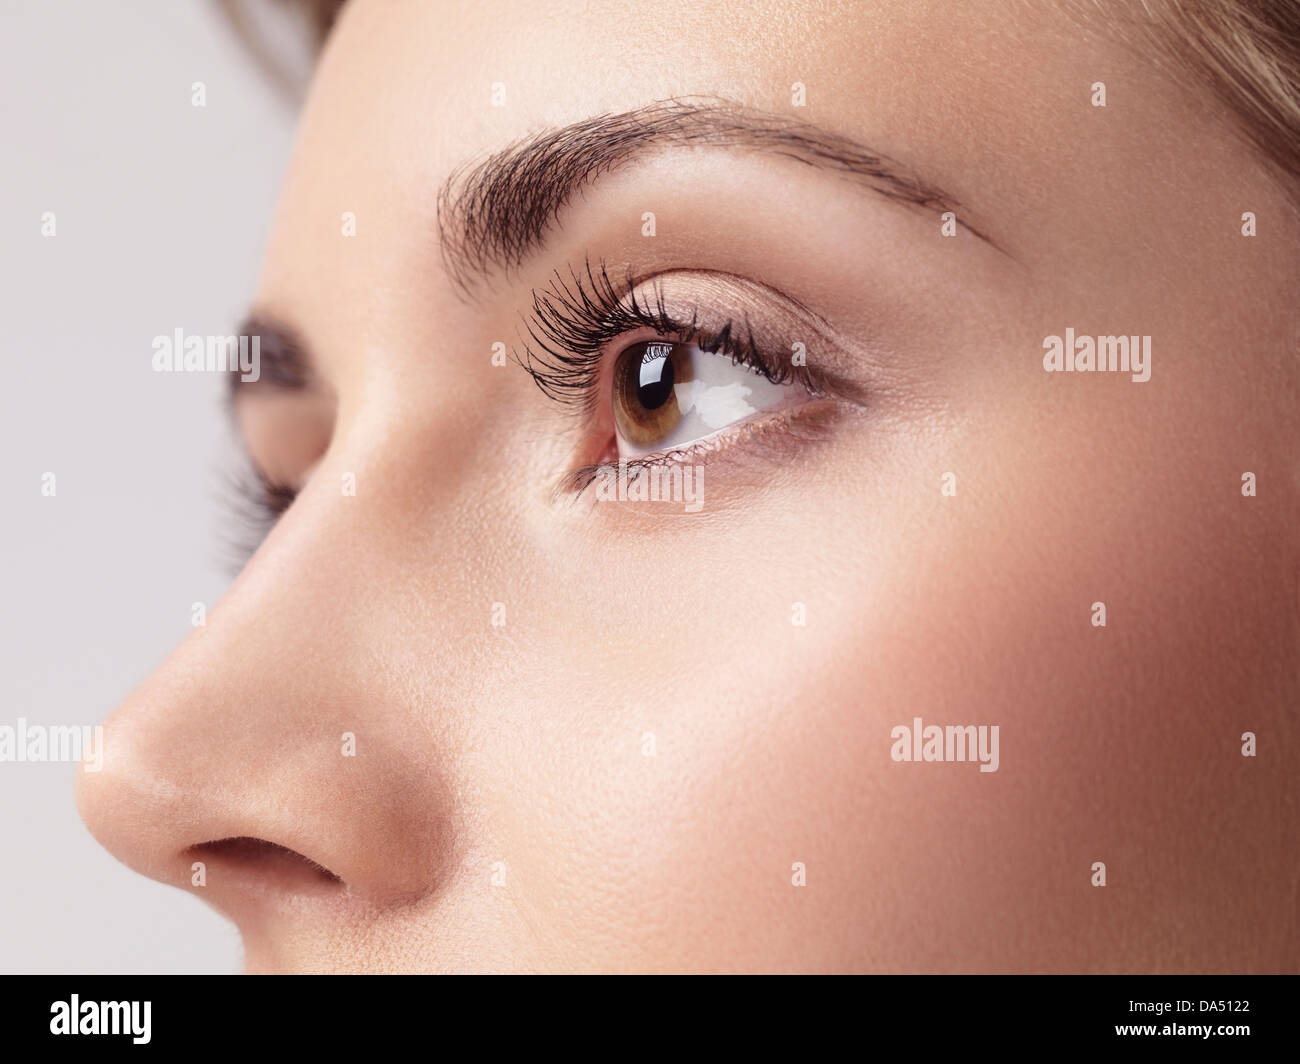 Führerschein und Fingerabdrücke bei MaximImages.com - Nahaufnahme eines jungen weiblichen Auges mit langen Wimpern Stockfoto